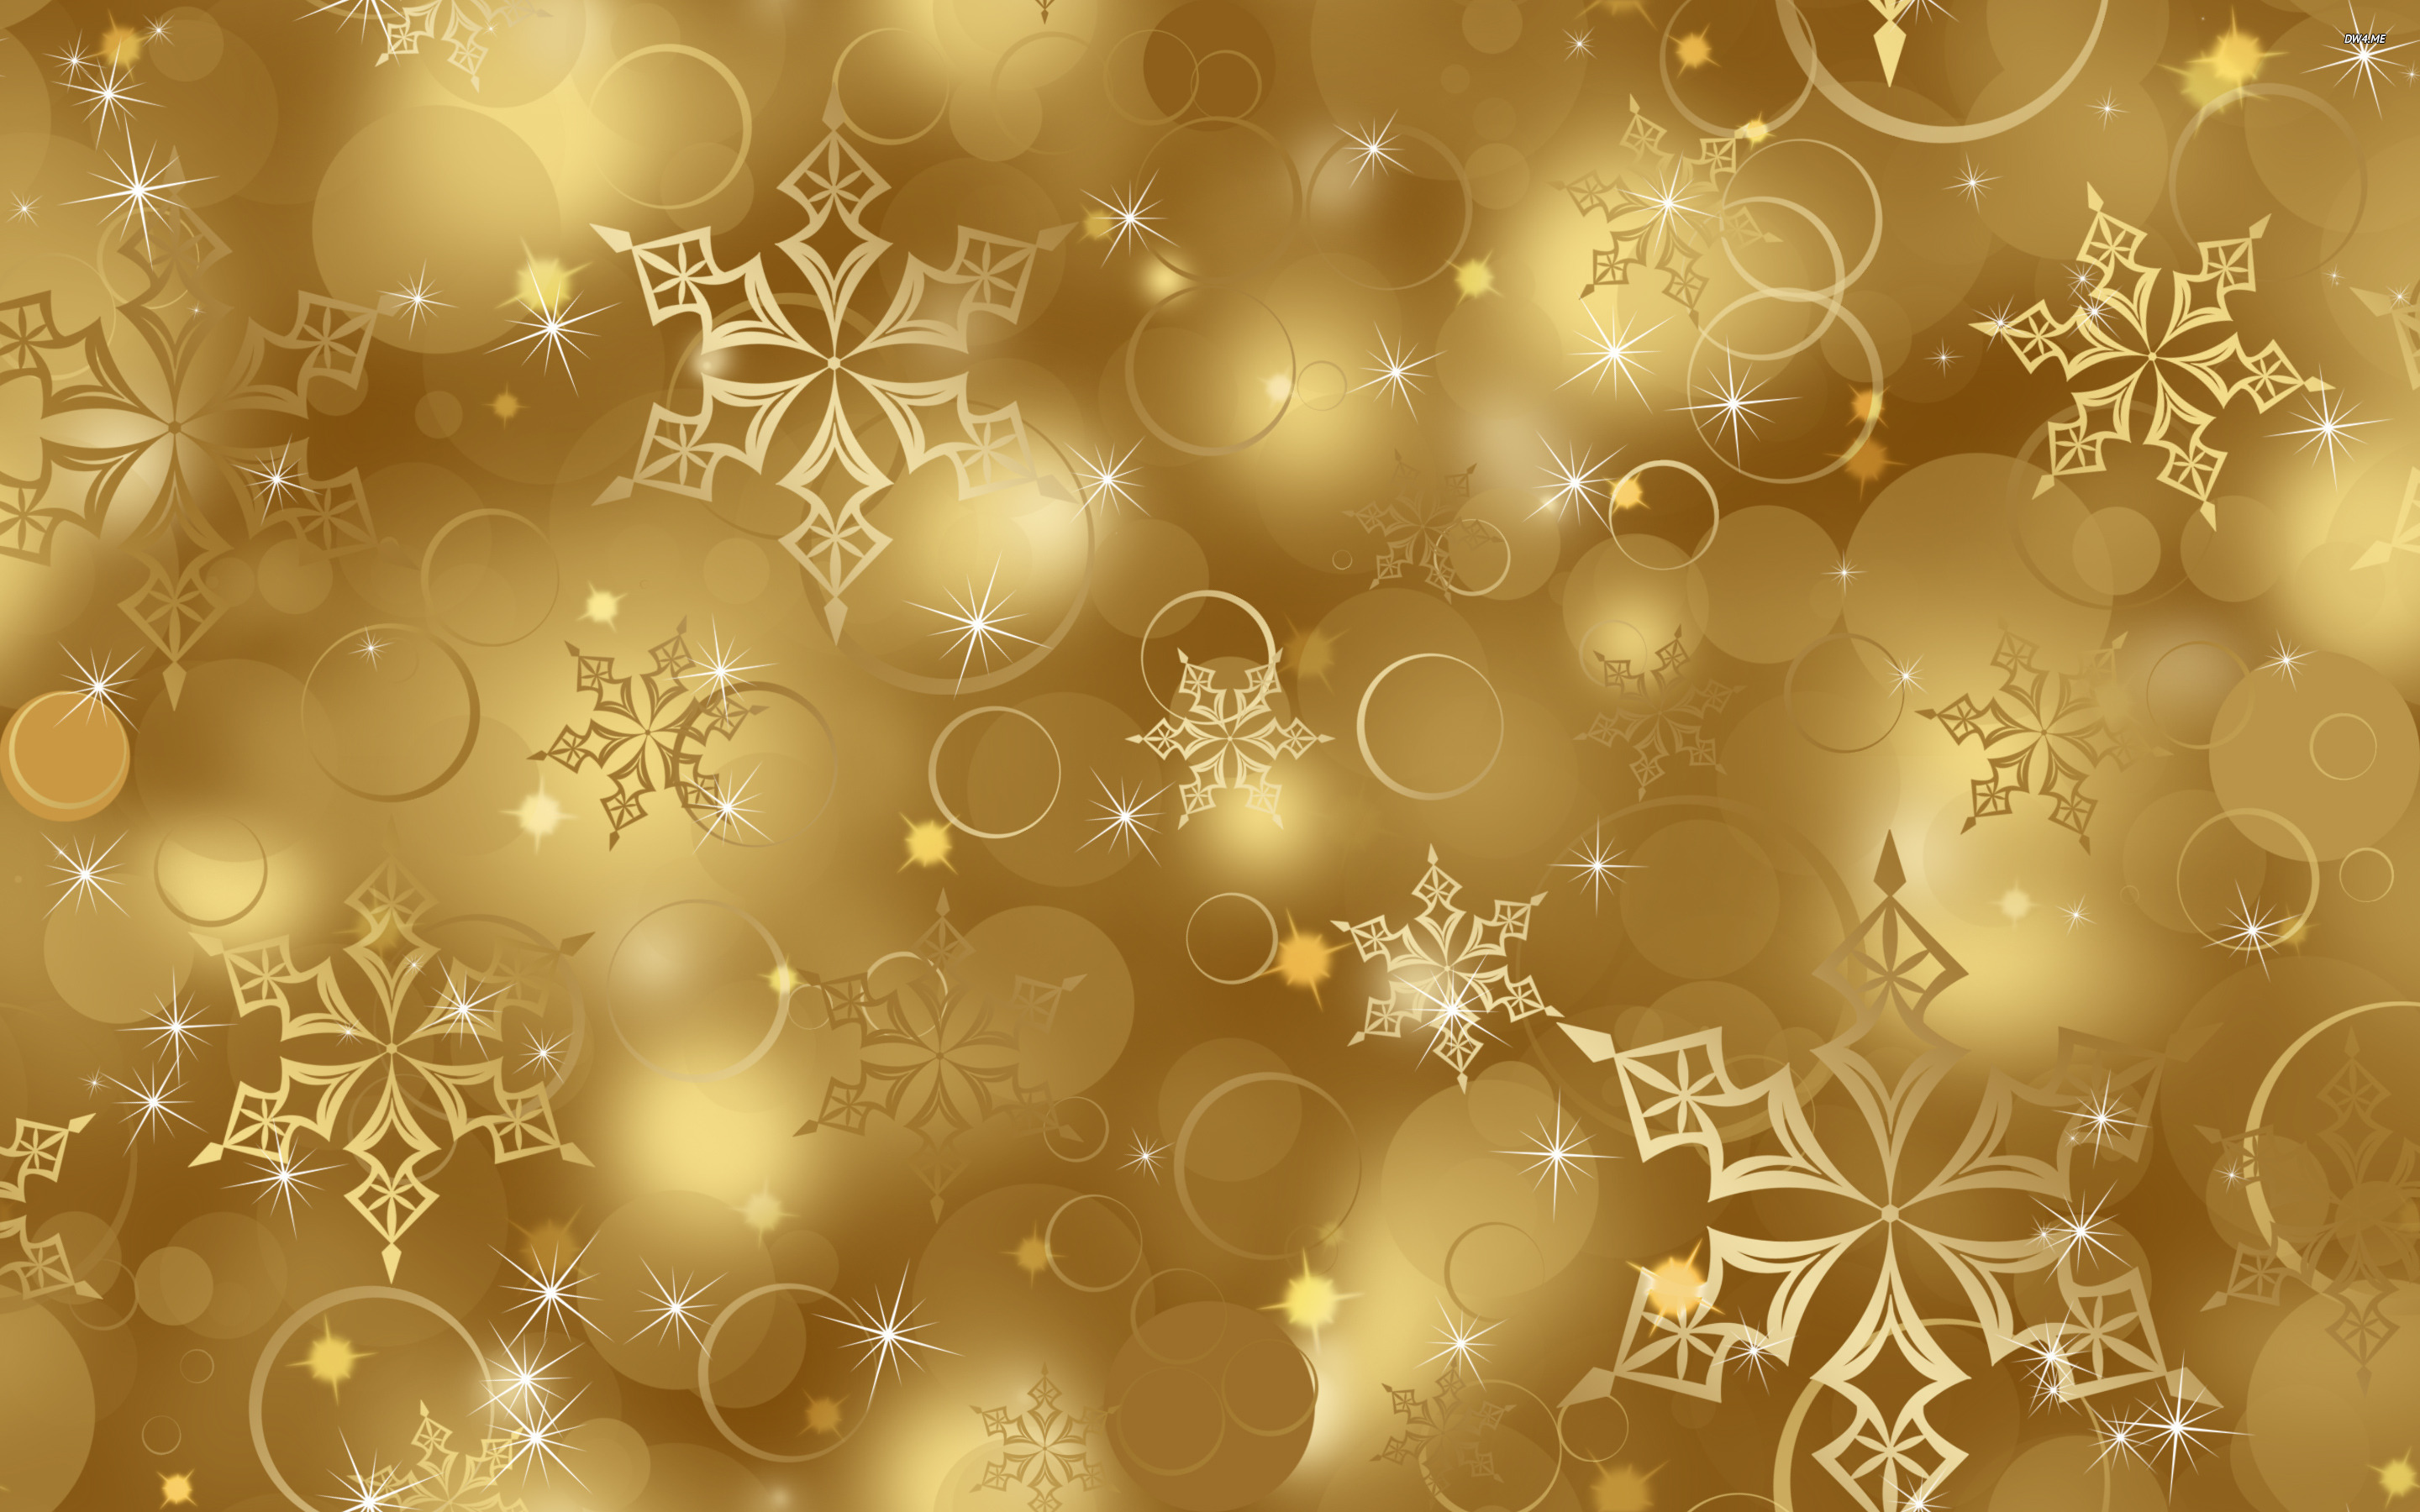 골드 스타 벽지,무늬,금,눈송이,크리스마스 장식,디자인